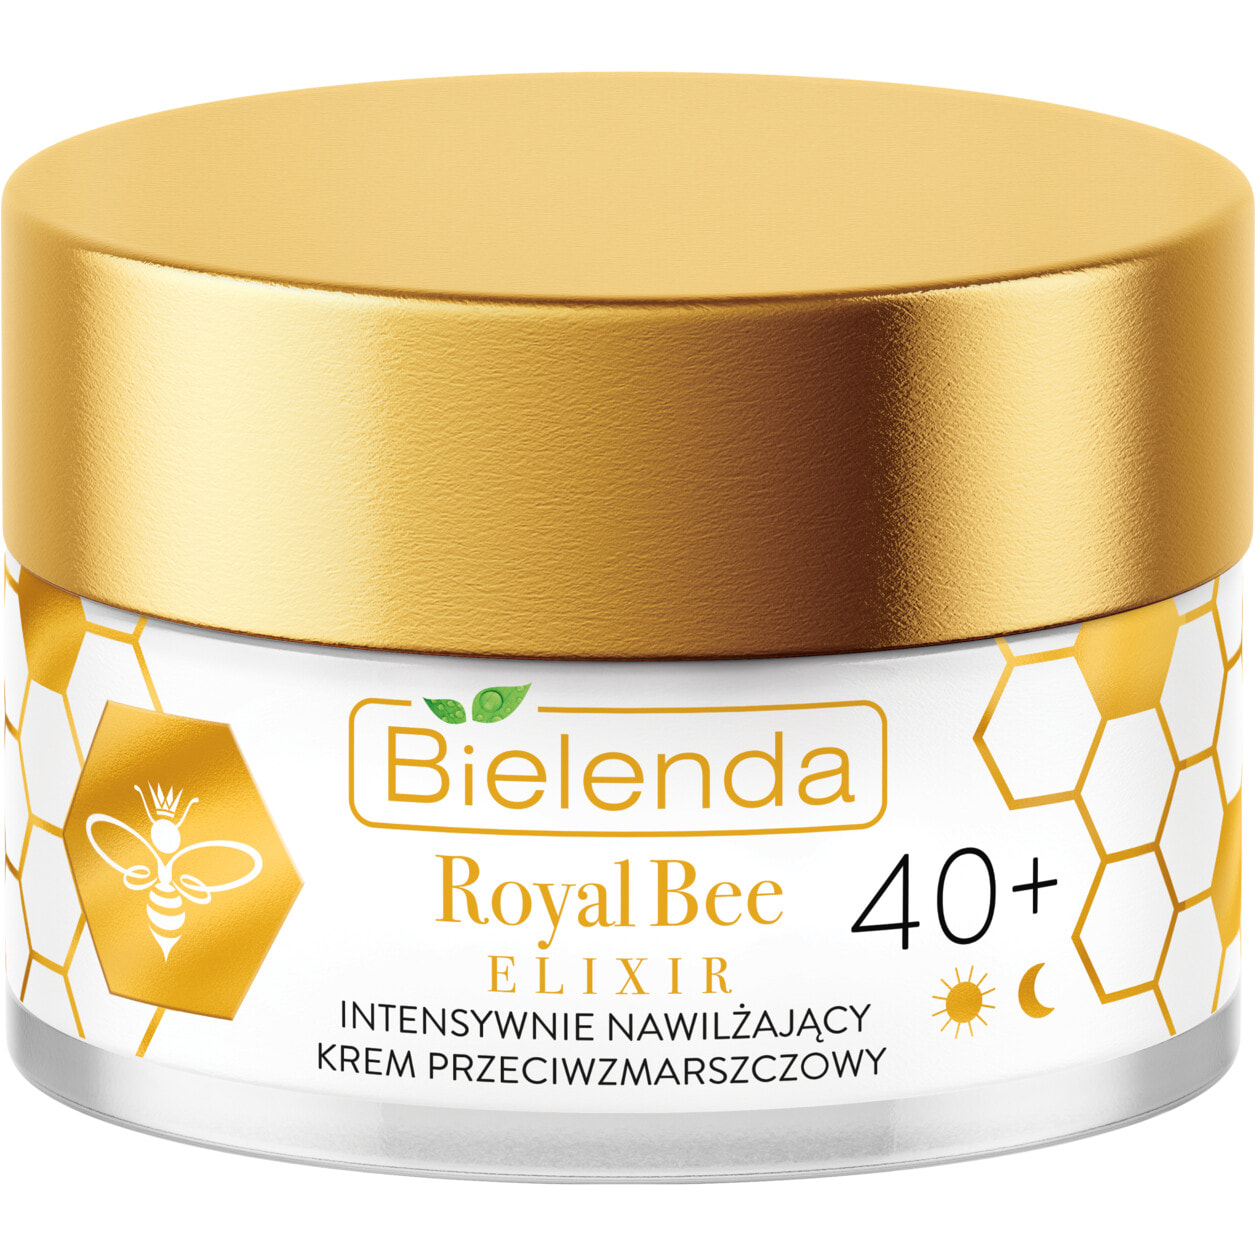 Средство для питания или увлажнения кожи лица Bielenda Royal Bee Elixir 40+ Krem Przeciwzmarszczkowy nawilżający